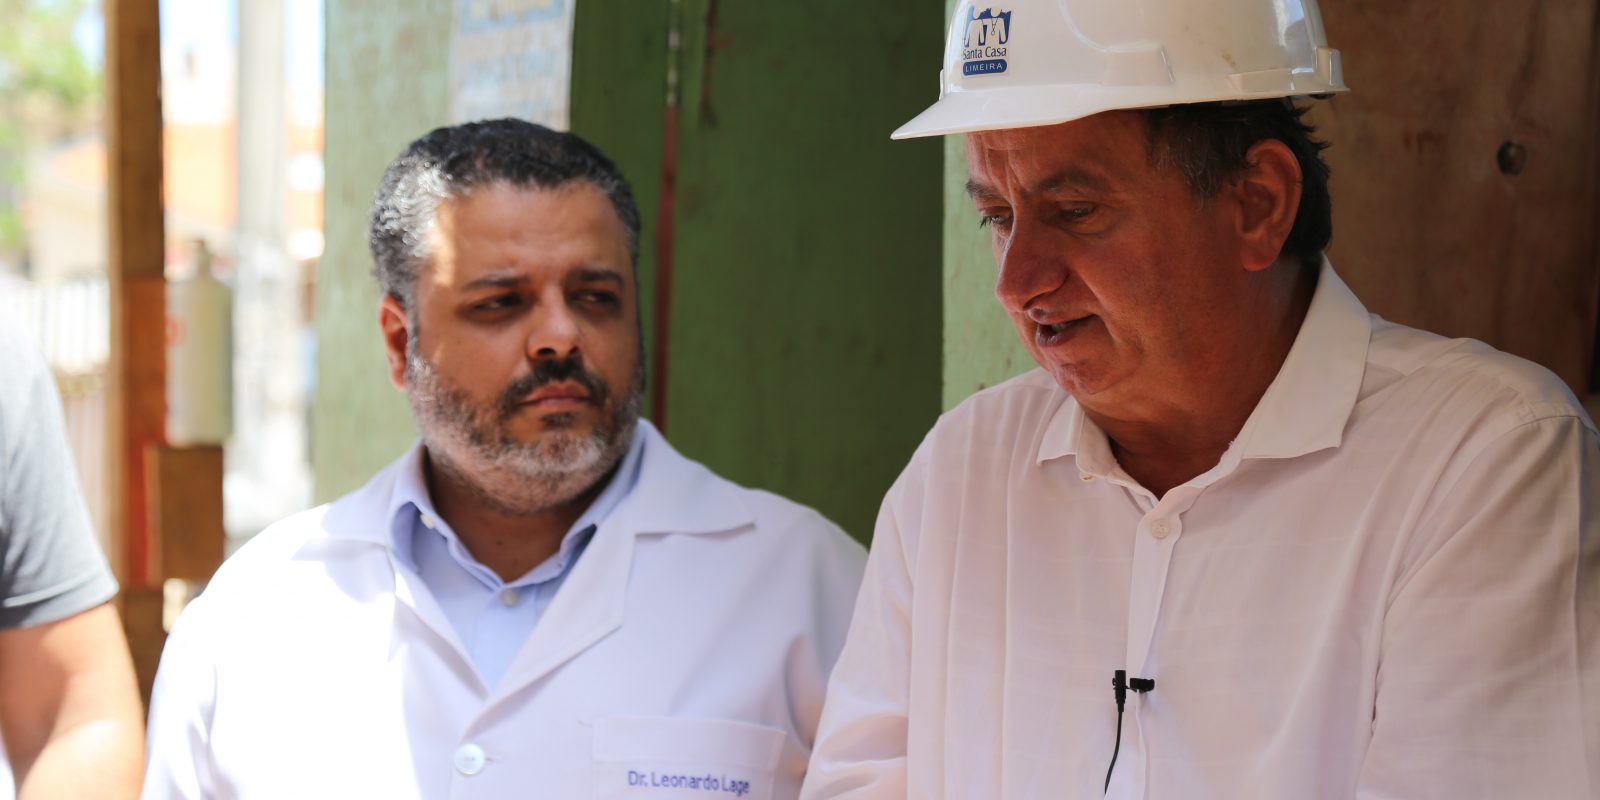 Miguel ajuda a construir e ampliar 3 hospitais na região